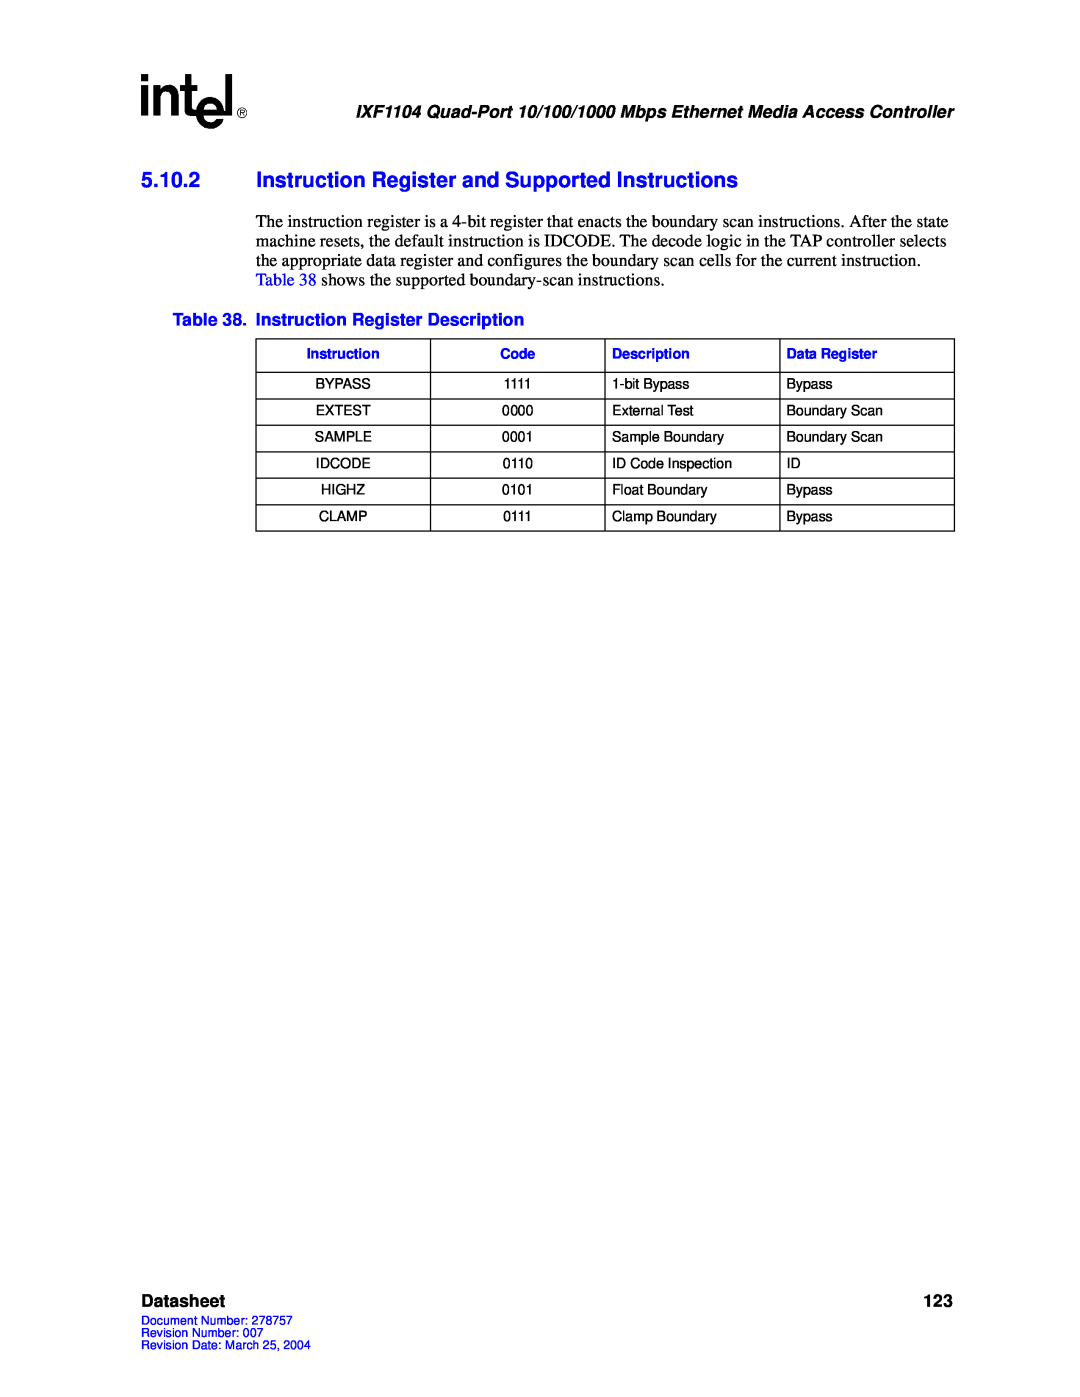 Intel IXF1104 manual Instruction Register Description, Datasheet 